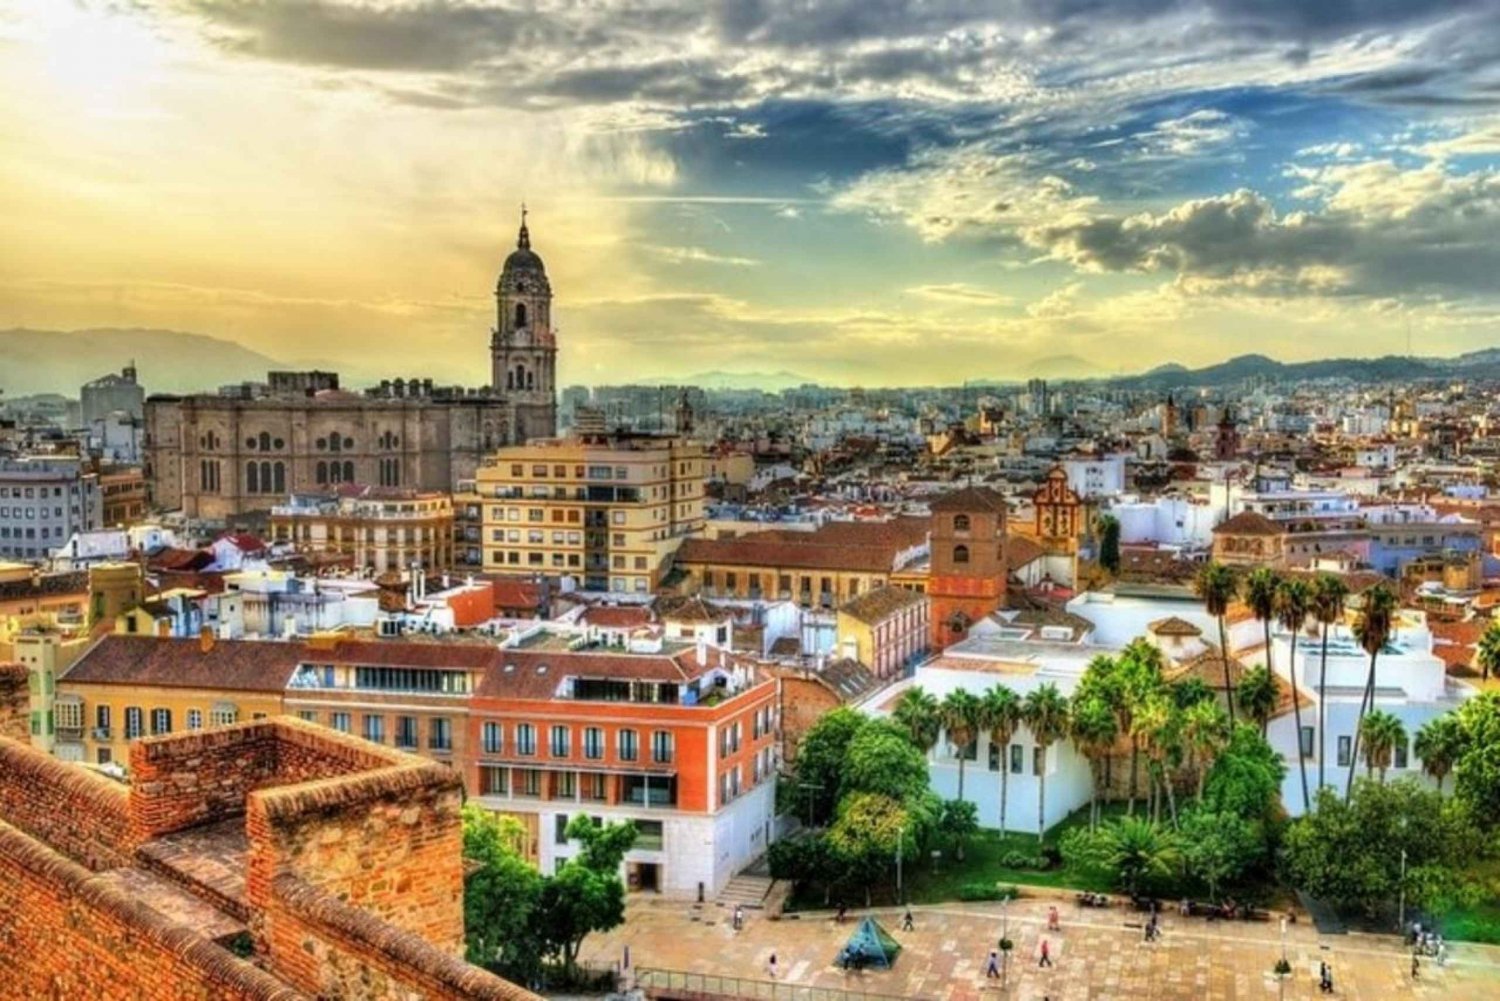 Málaga: Wandeltour langs bezienswaardigheden